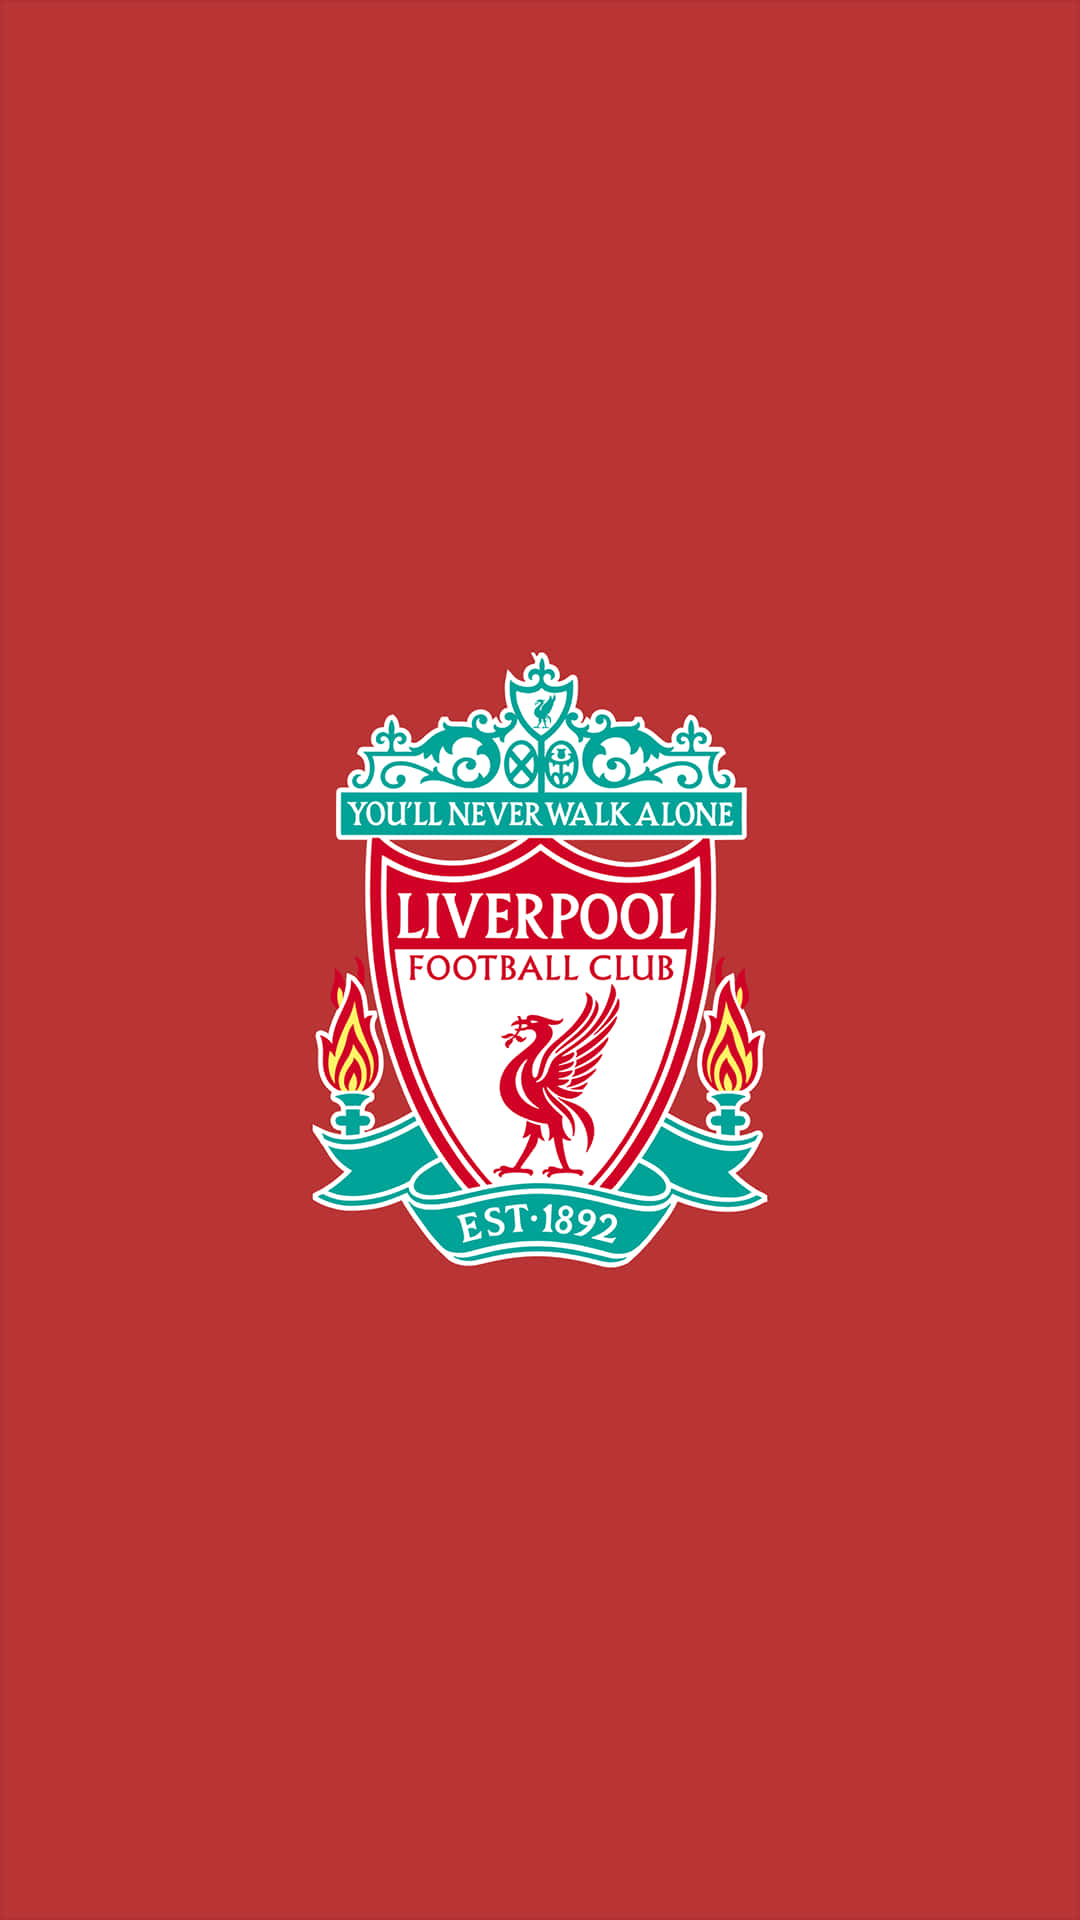 Esprimiil Tuo Orgoglio Per Il Liverpool F.c. Ovunque Tu Vada! Sfondo